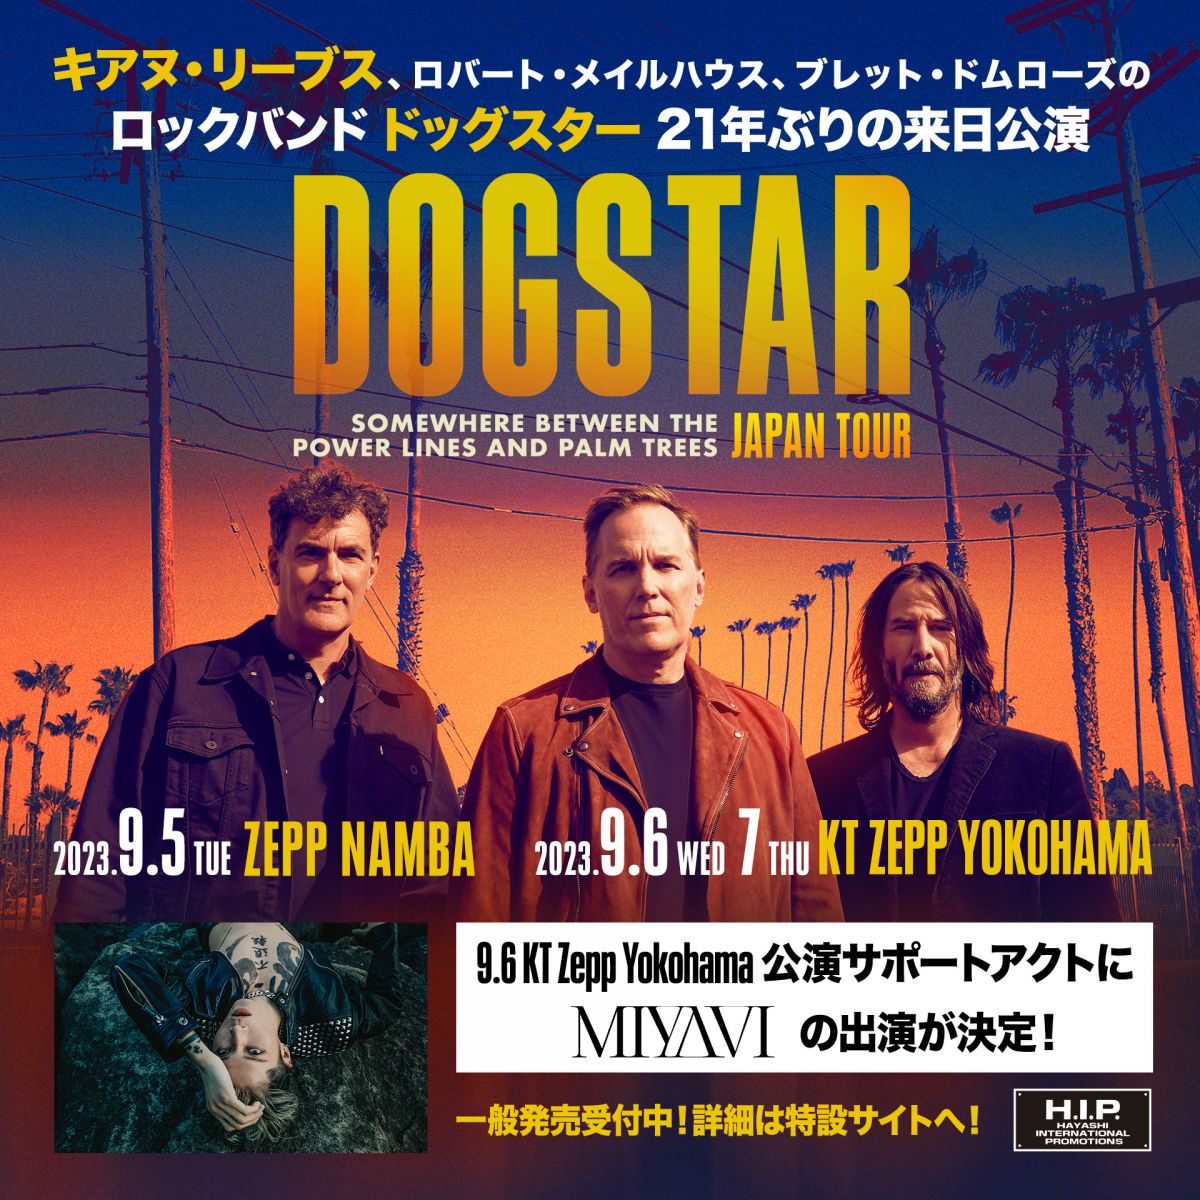 キアヌ・リーブスのロックバンド Dogstar 来日公演にMIYAVI の出演が